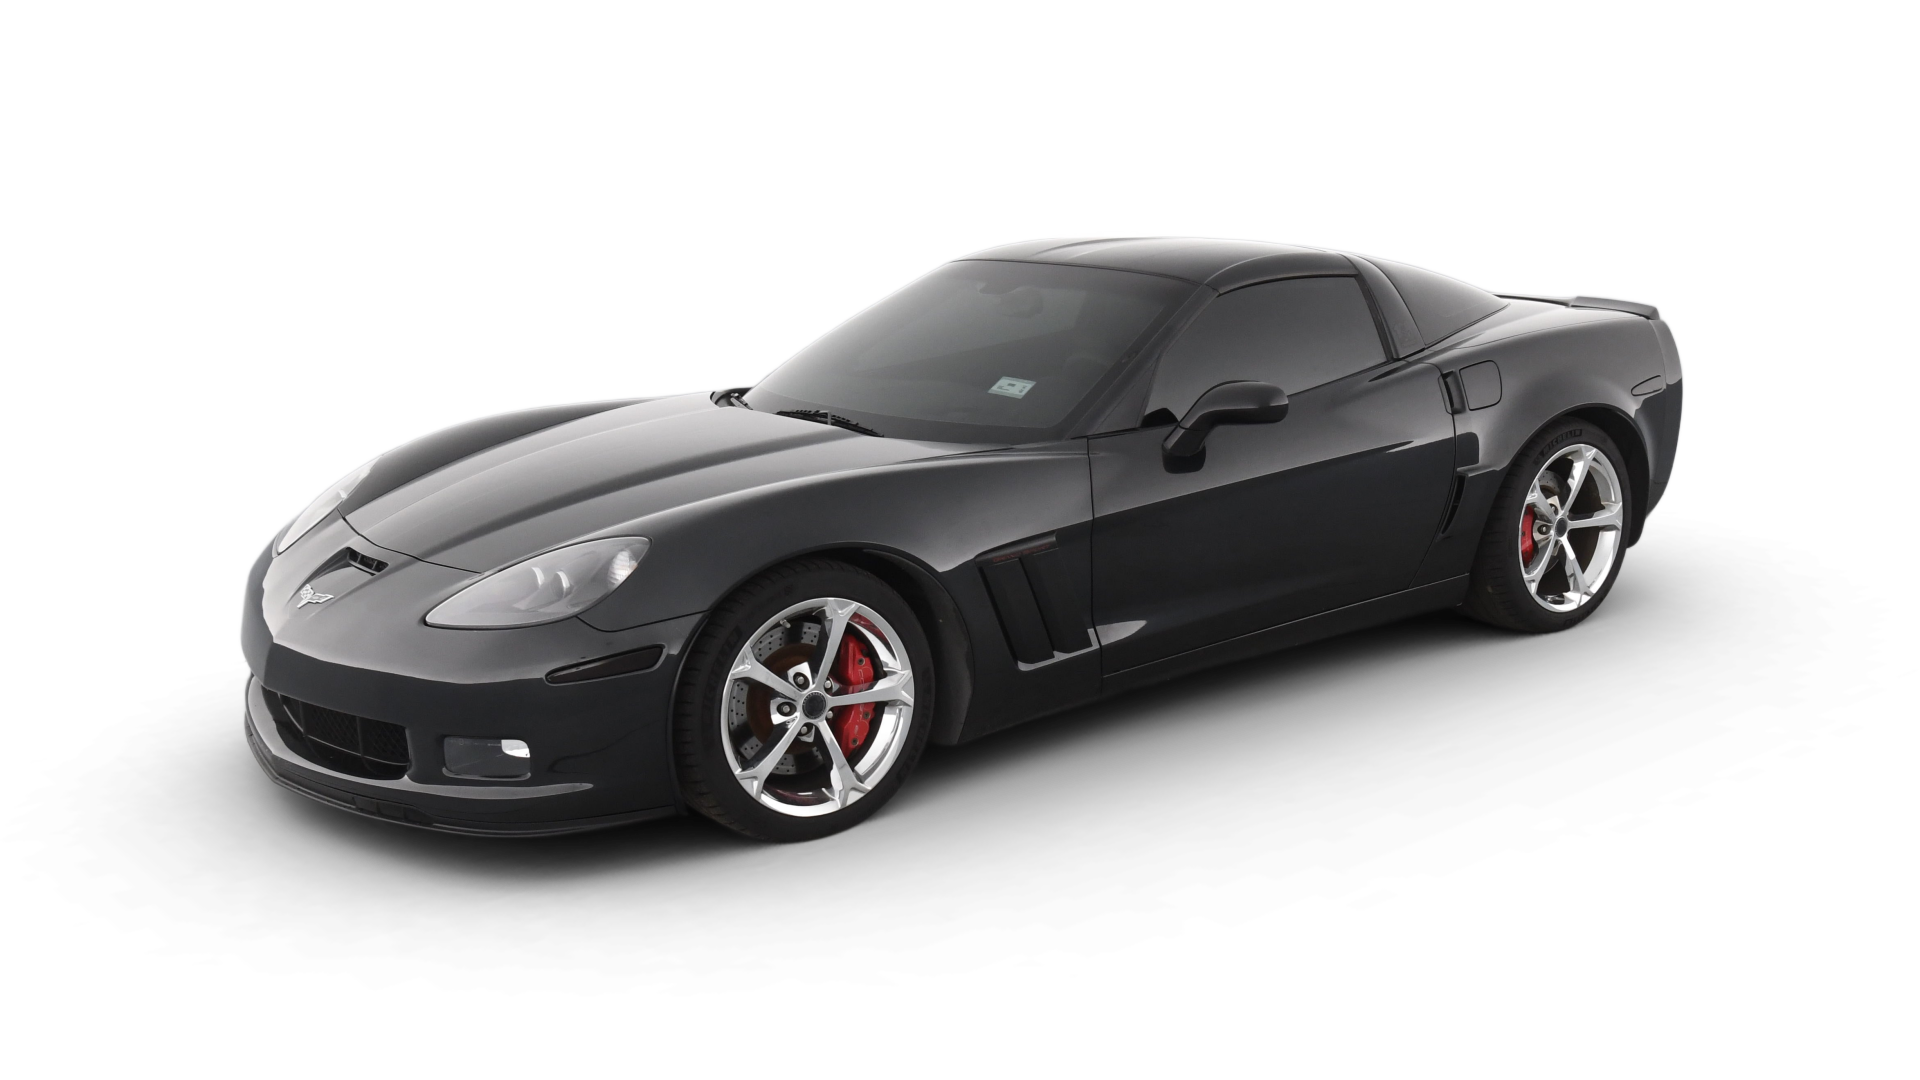 Chevrolet Corvette model image.